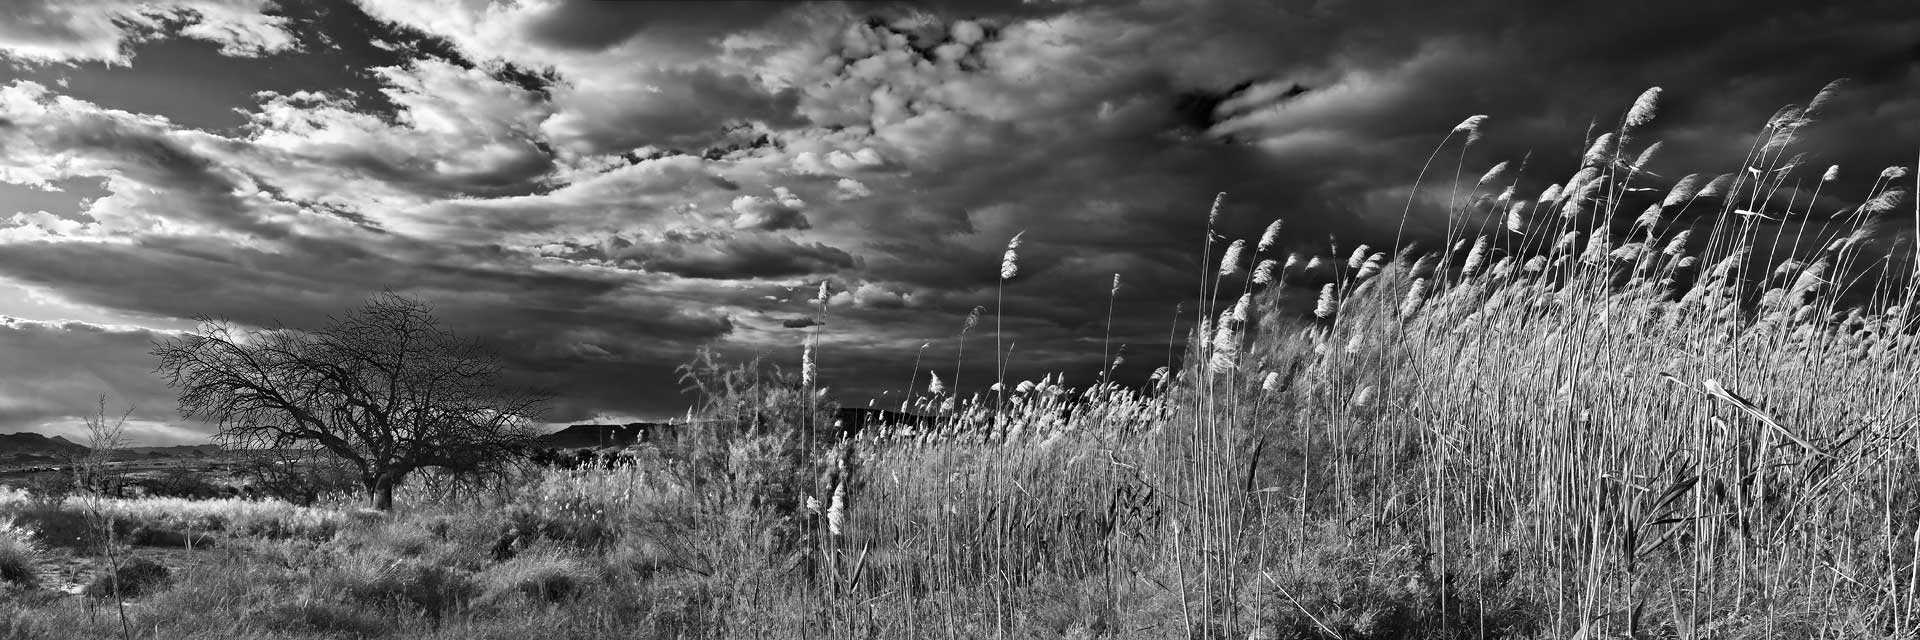 Fotografía de Manuel Portillo: paisaje con cañas y algarrobo muerto